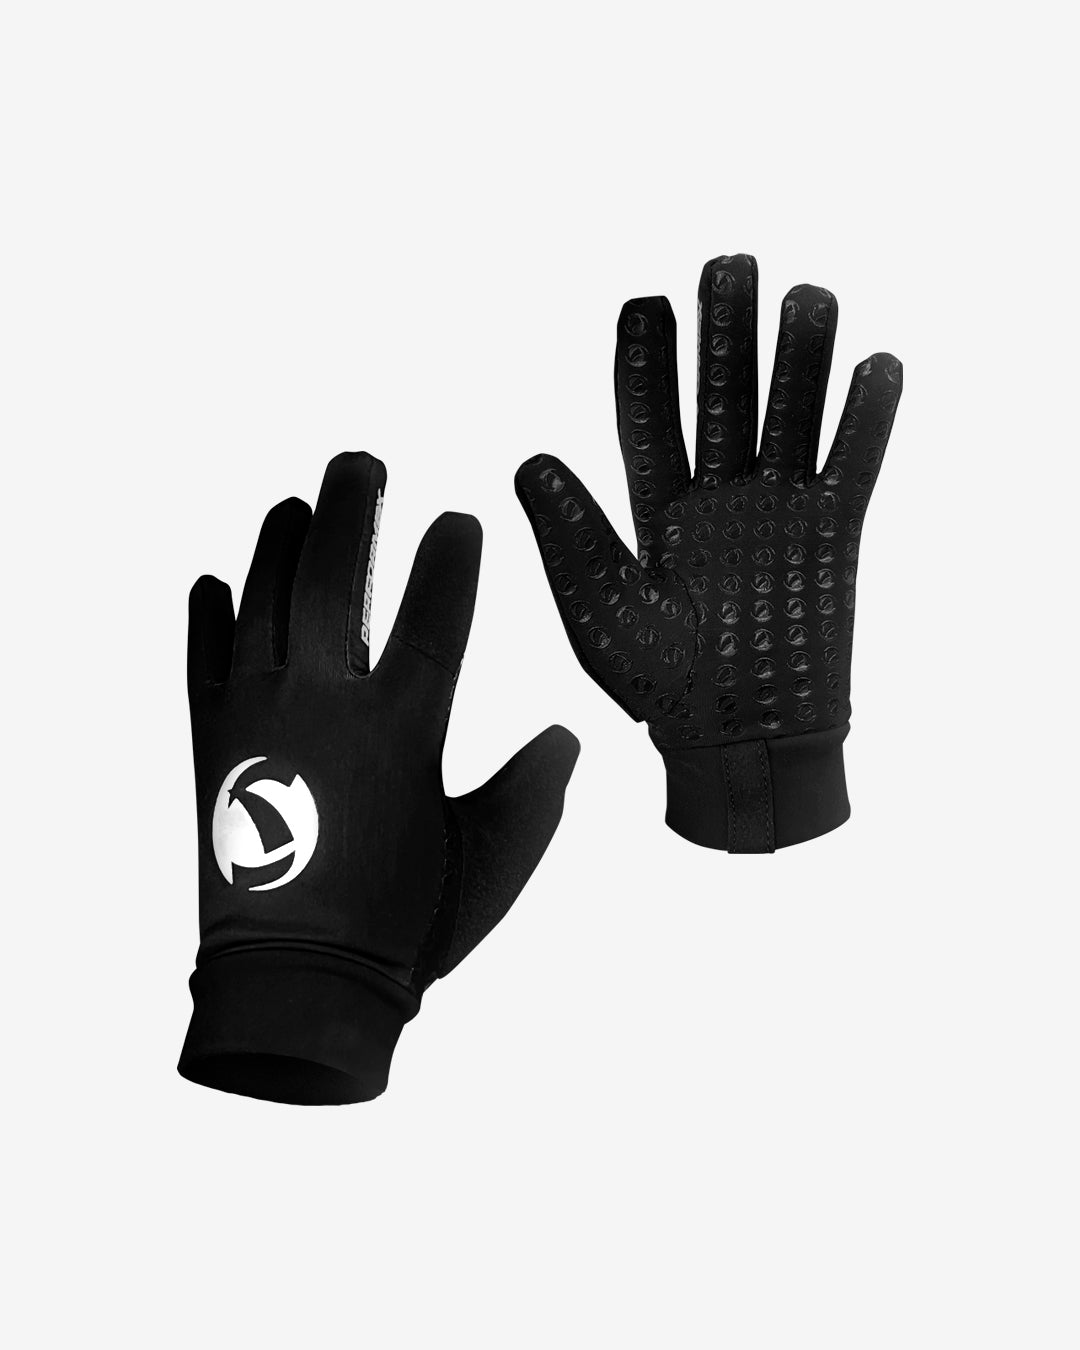 Performex Grippa Gloves